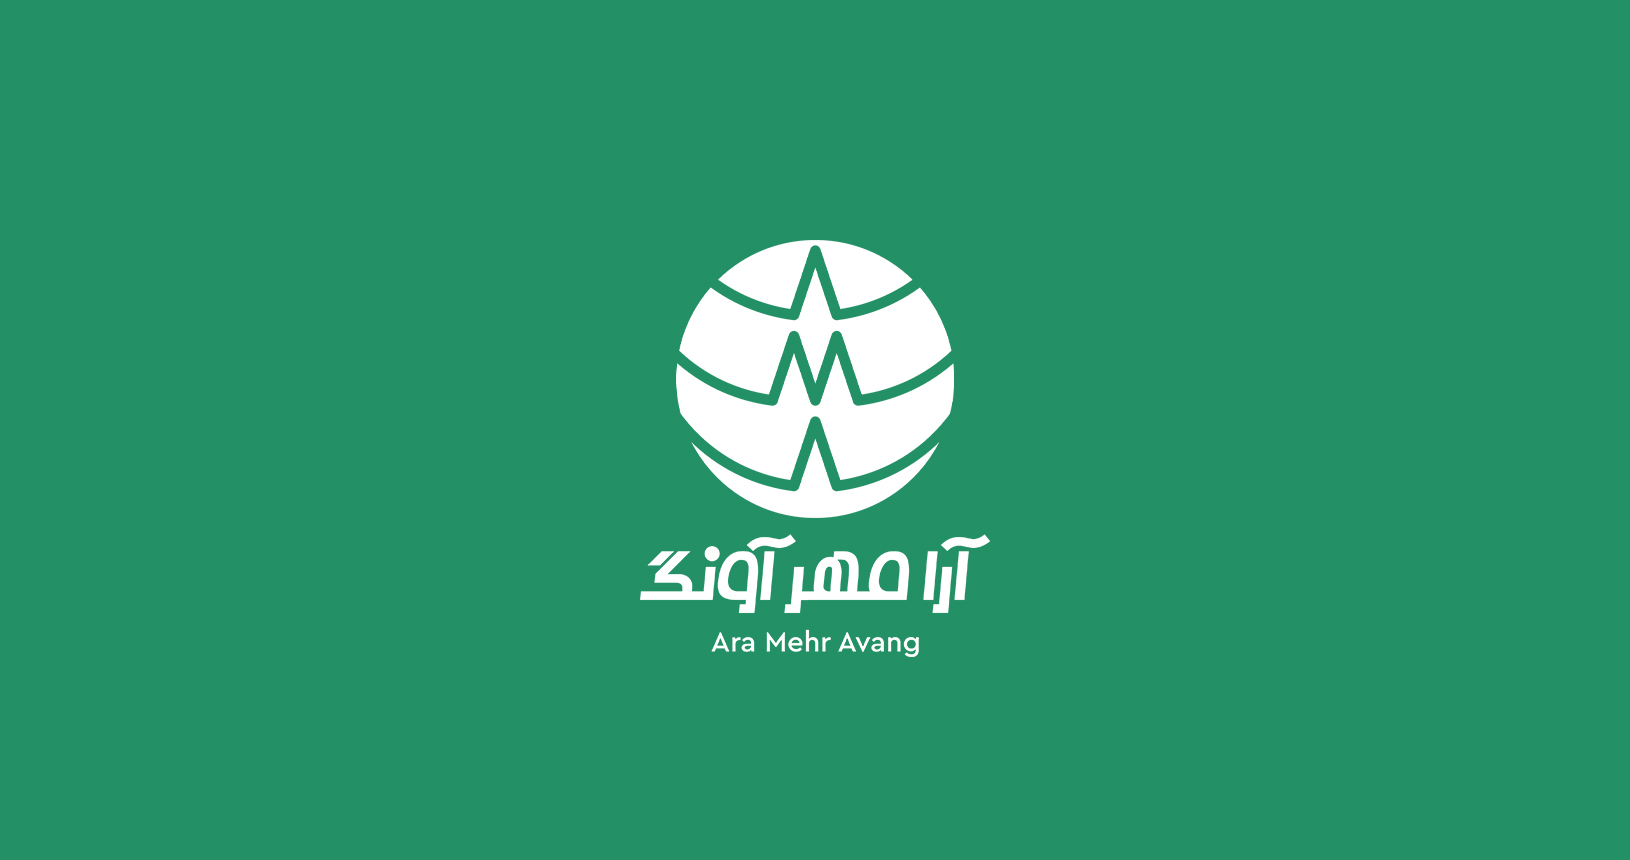 kermanshah-logo